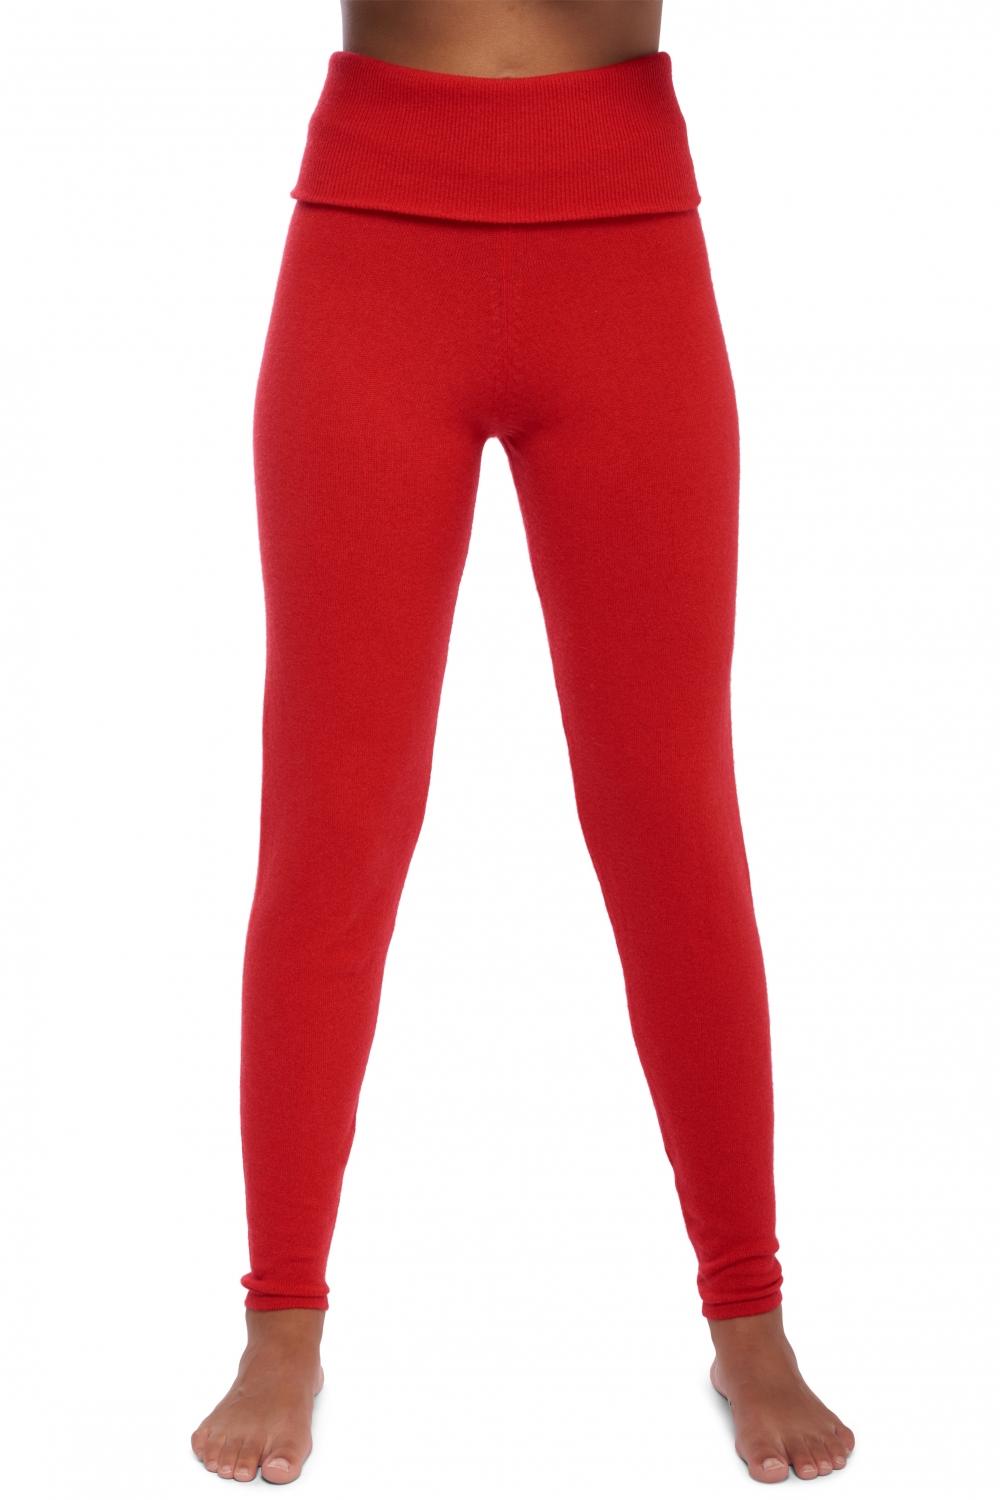 Cachemire pantalon legging femme shirley rouge xl